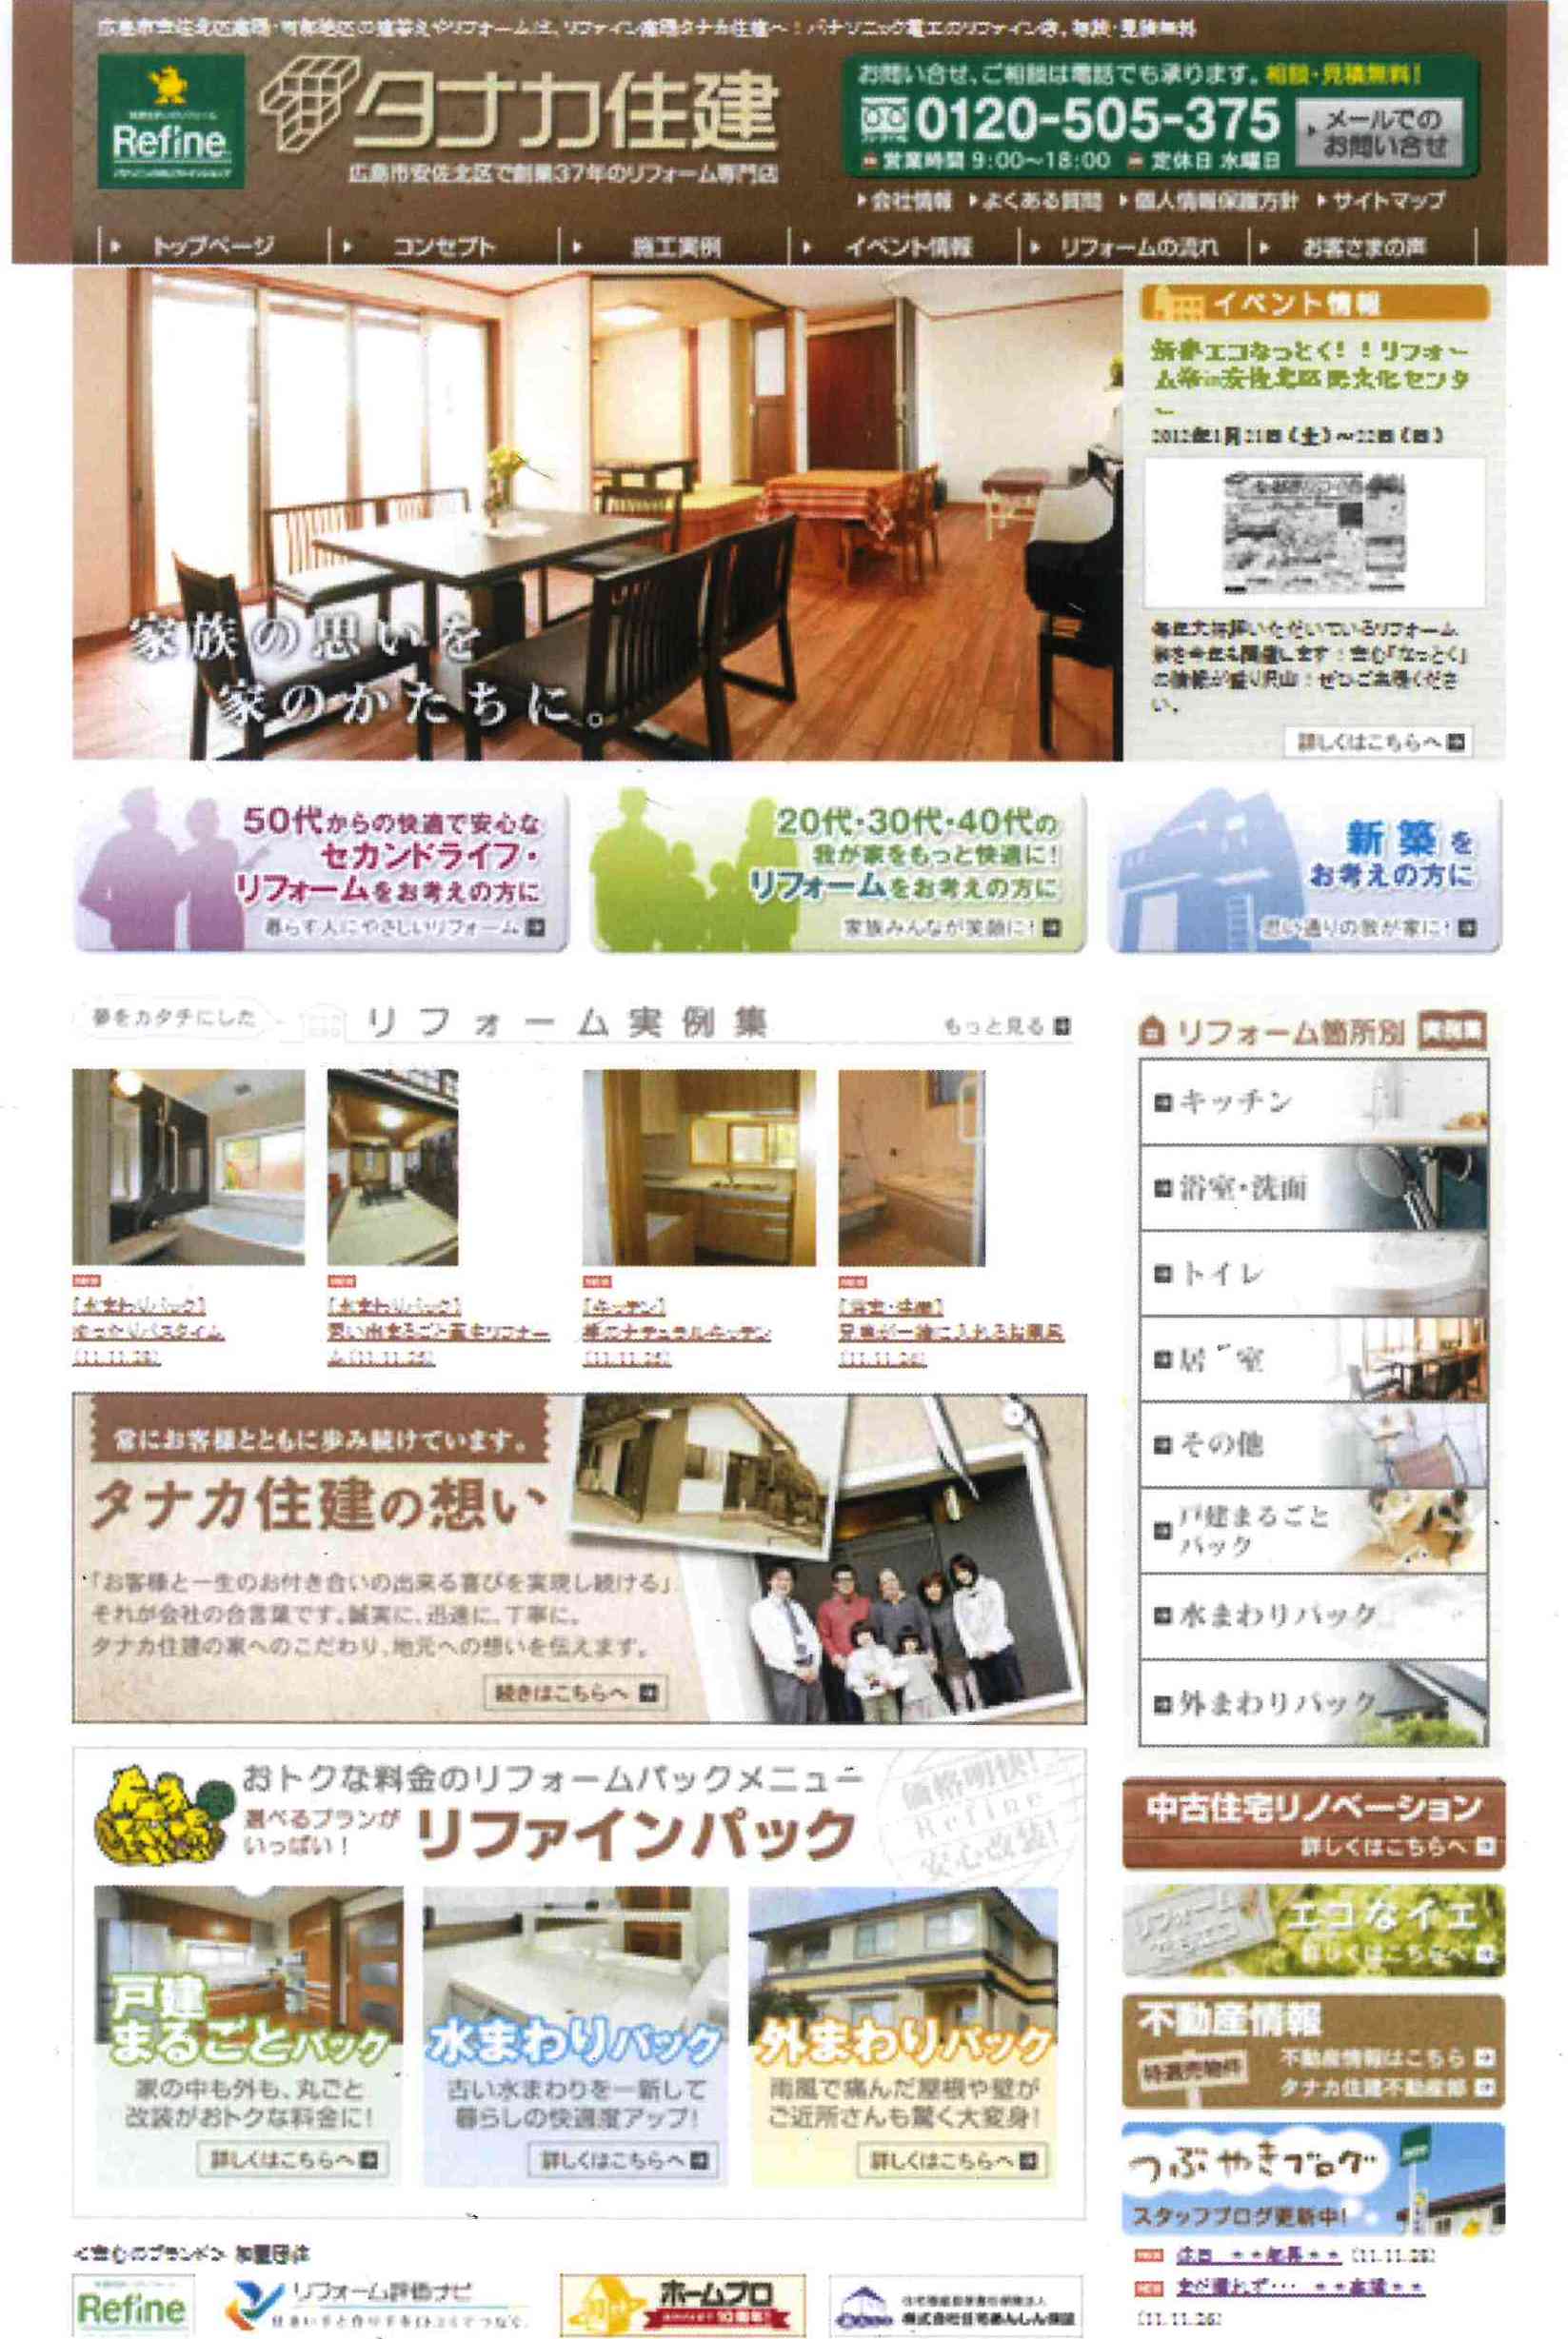 http://www.tanakajuken.com/blog/images/doc20111129081639_001.jpg